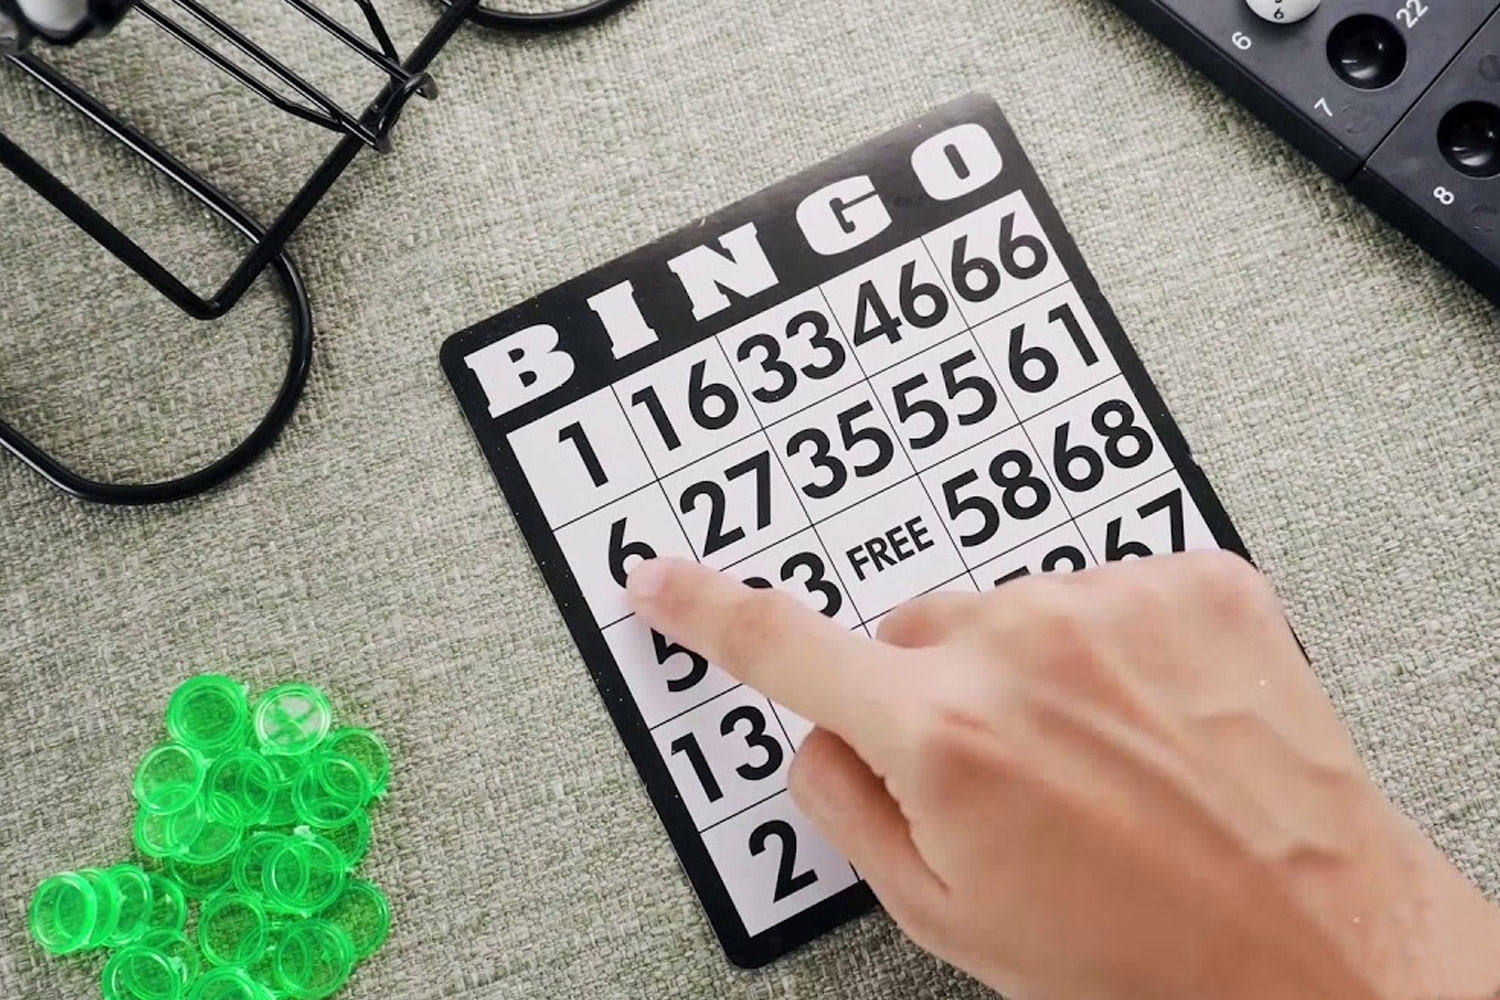 bingo é jogo de azar